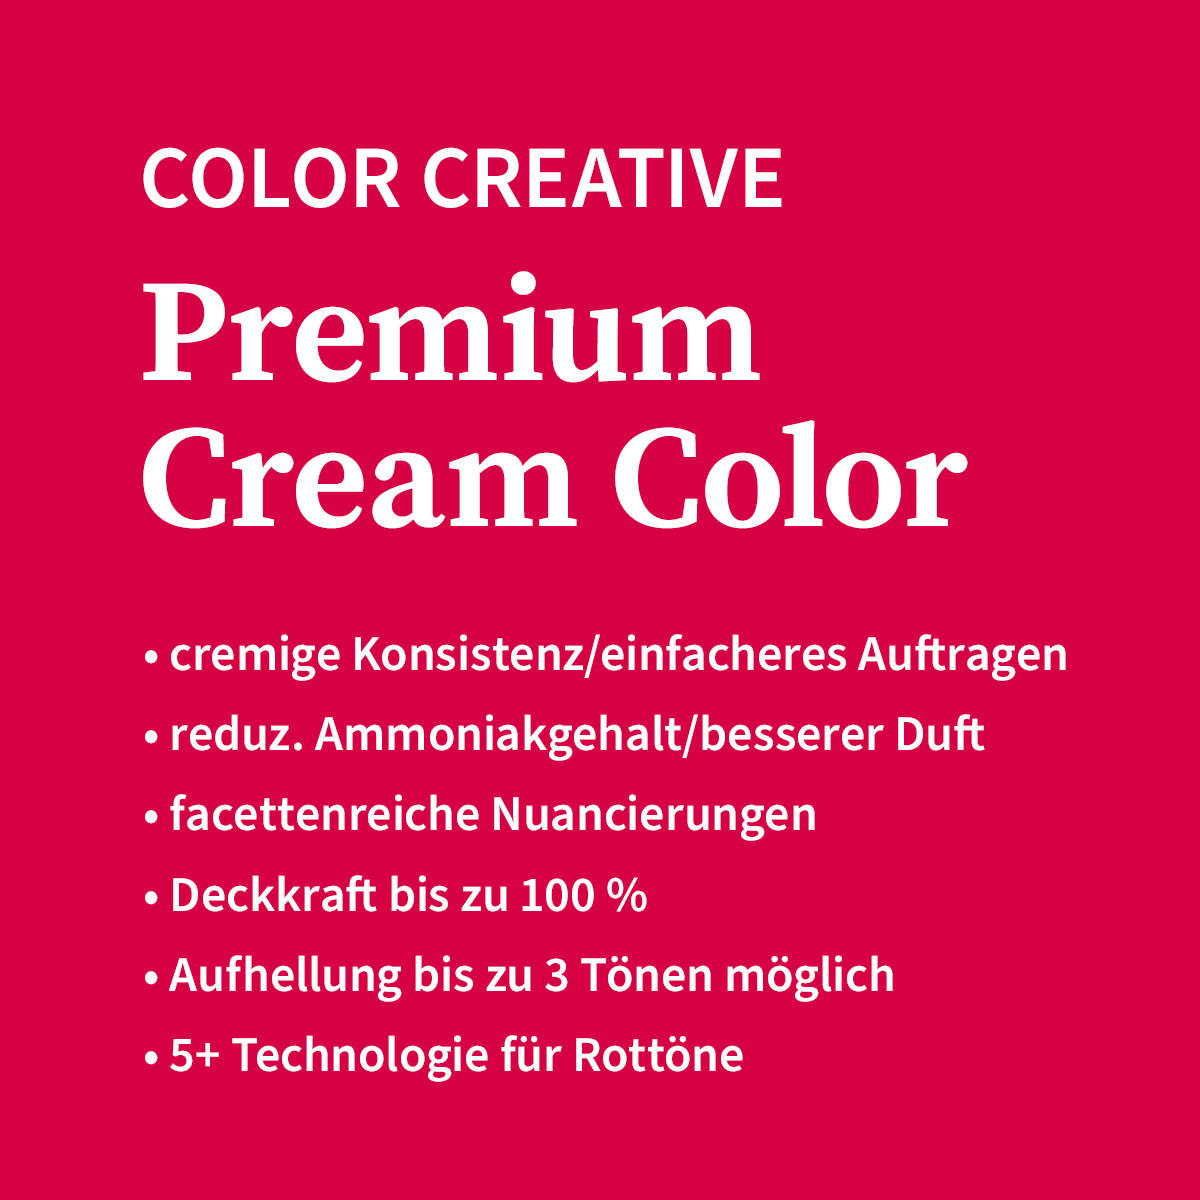 Basler Color Creative Premium Cream Color 10/6 viola biondo chiaro, tubo 60 ml - 4